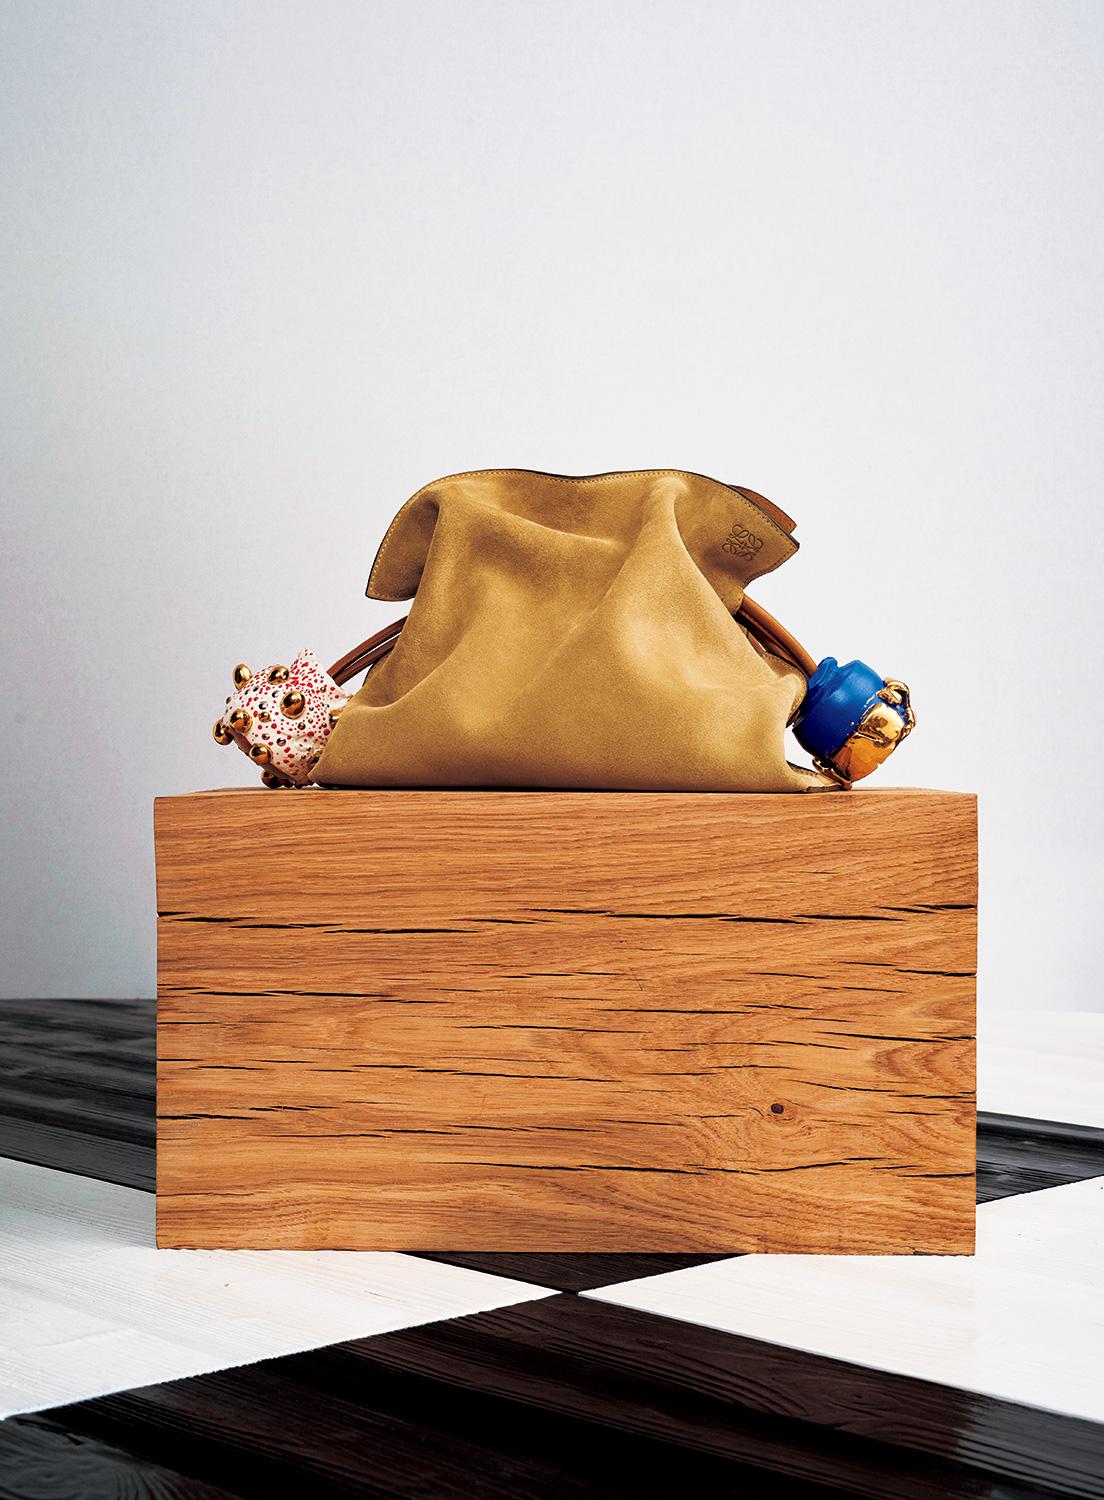 ポップな色合いの陶製のチャームをドローストリングにつけたクラッチ《フラメンコ》。上の写真の1点のみ日本で販売予定。2,237,400円（予定価格）。